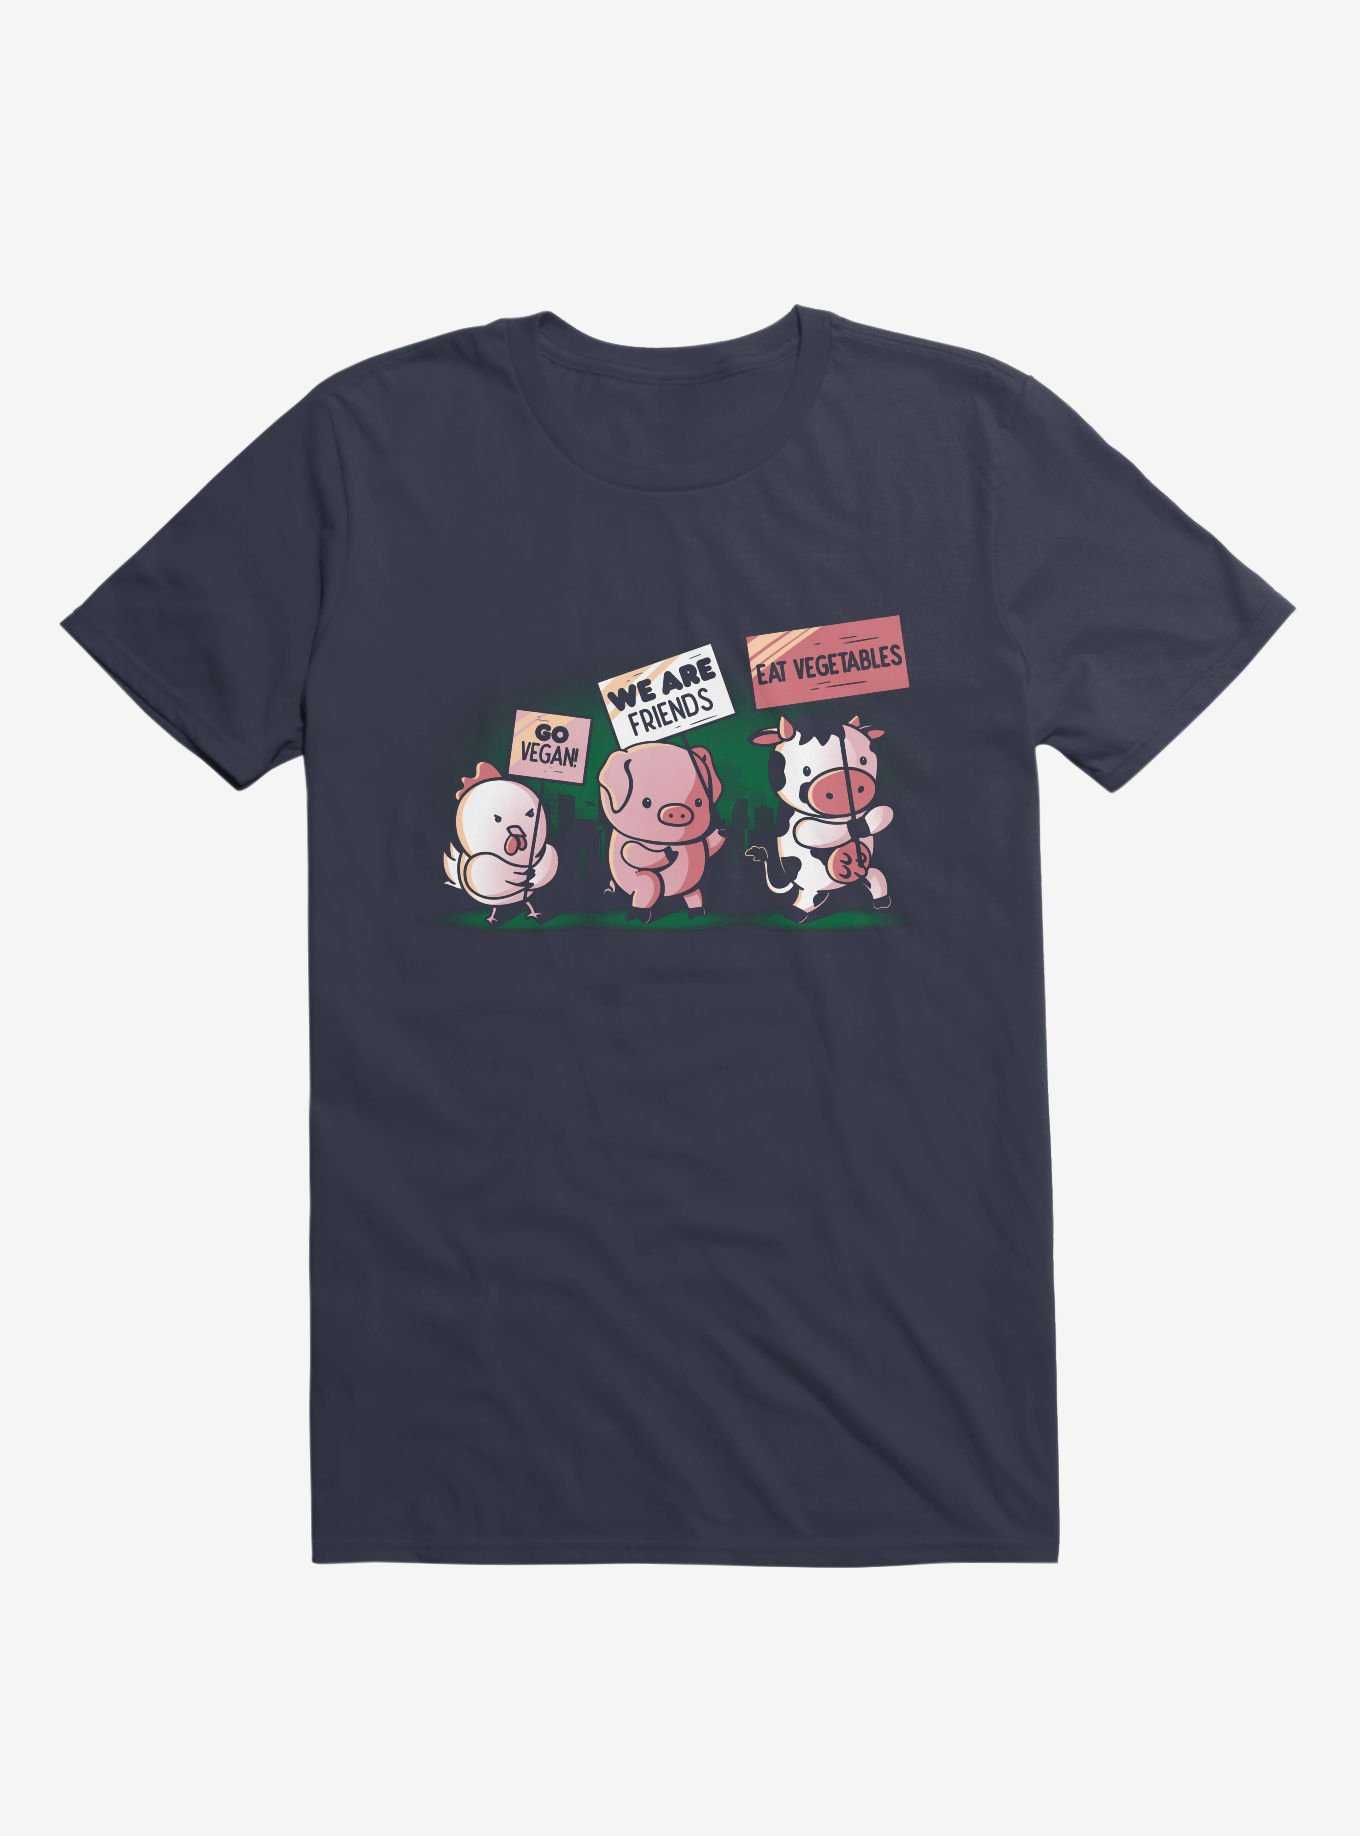 Go Vegan! T-Shirt, , hi-res